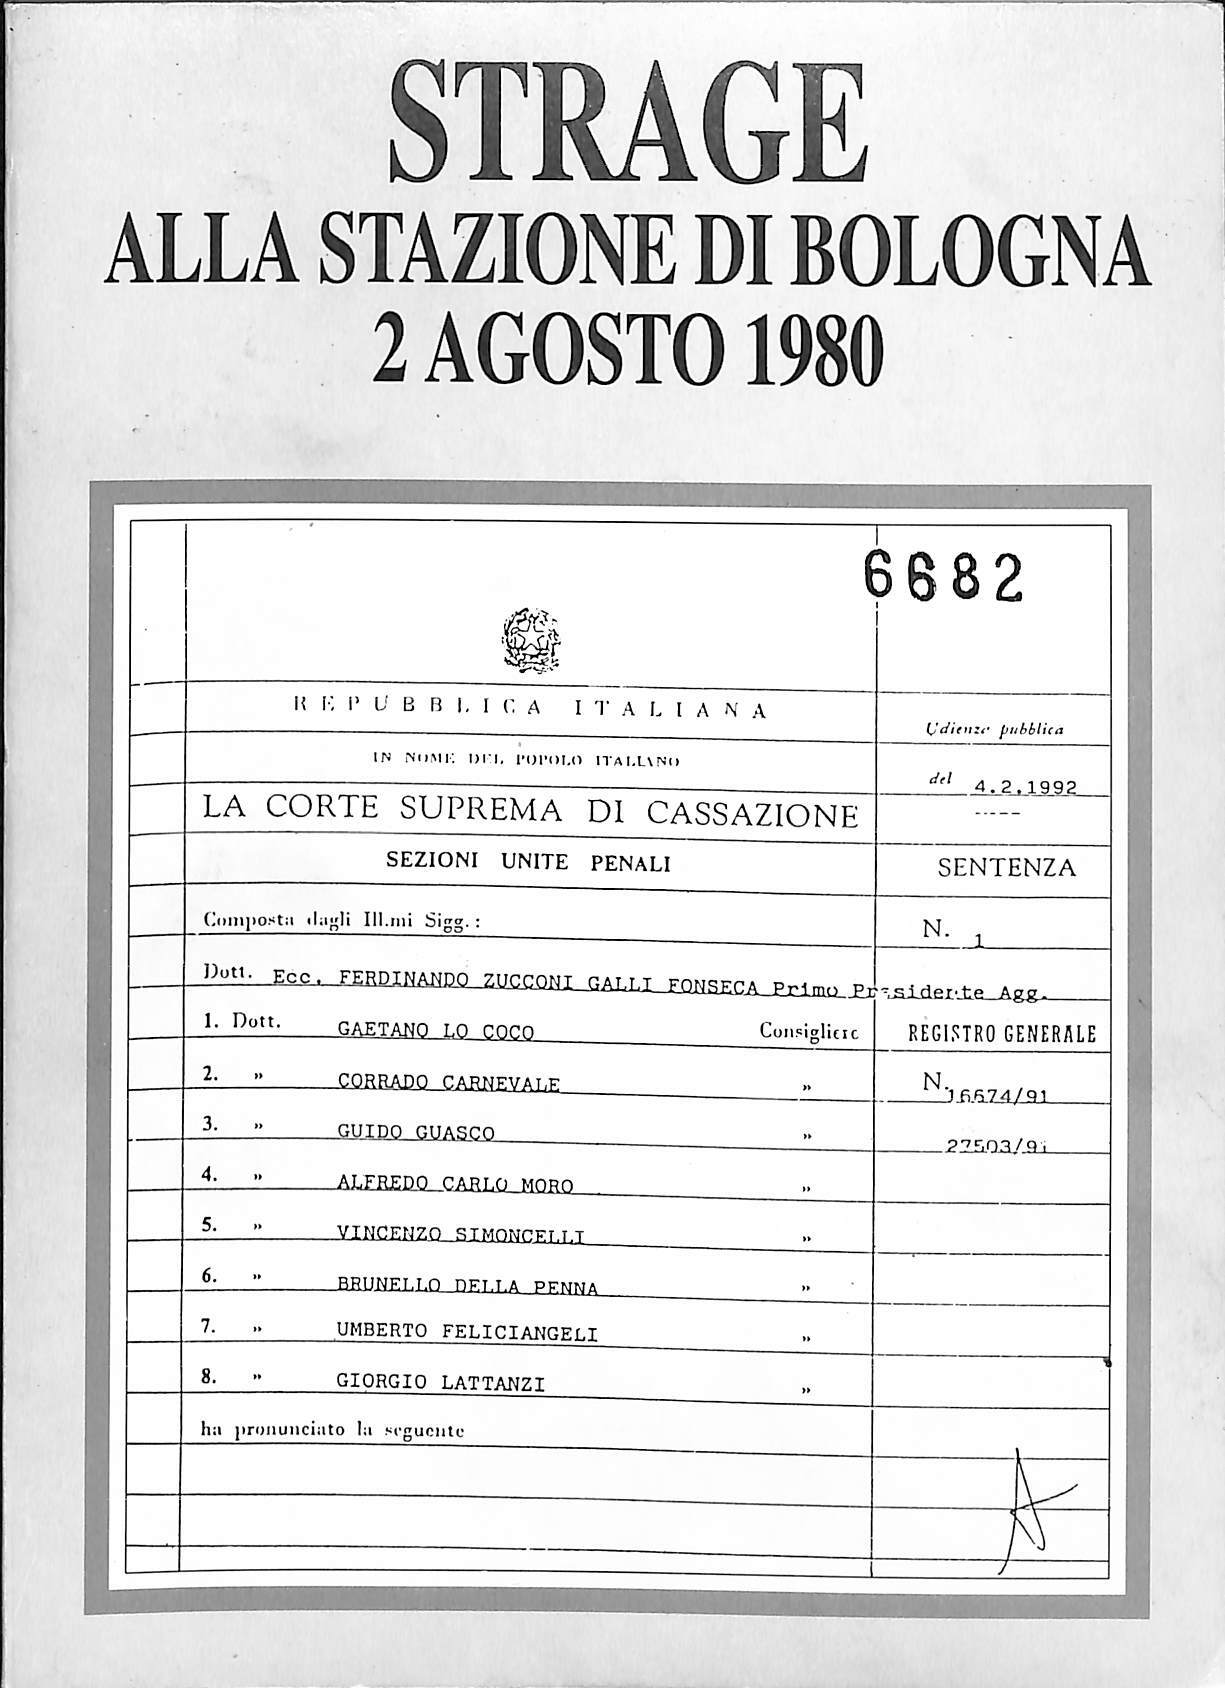 Strage alla stazione di Bologna 2 agosto 1980. Sentenza